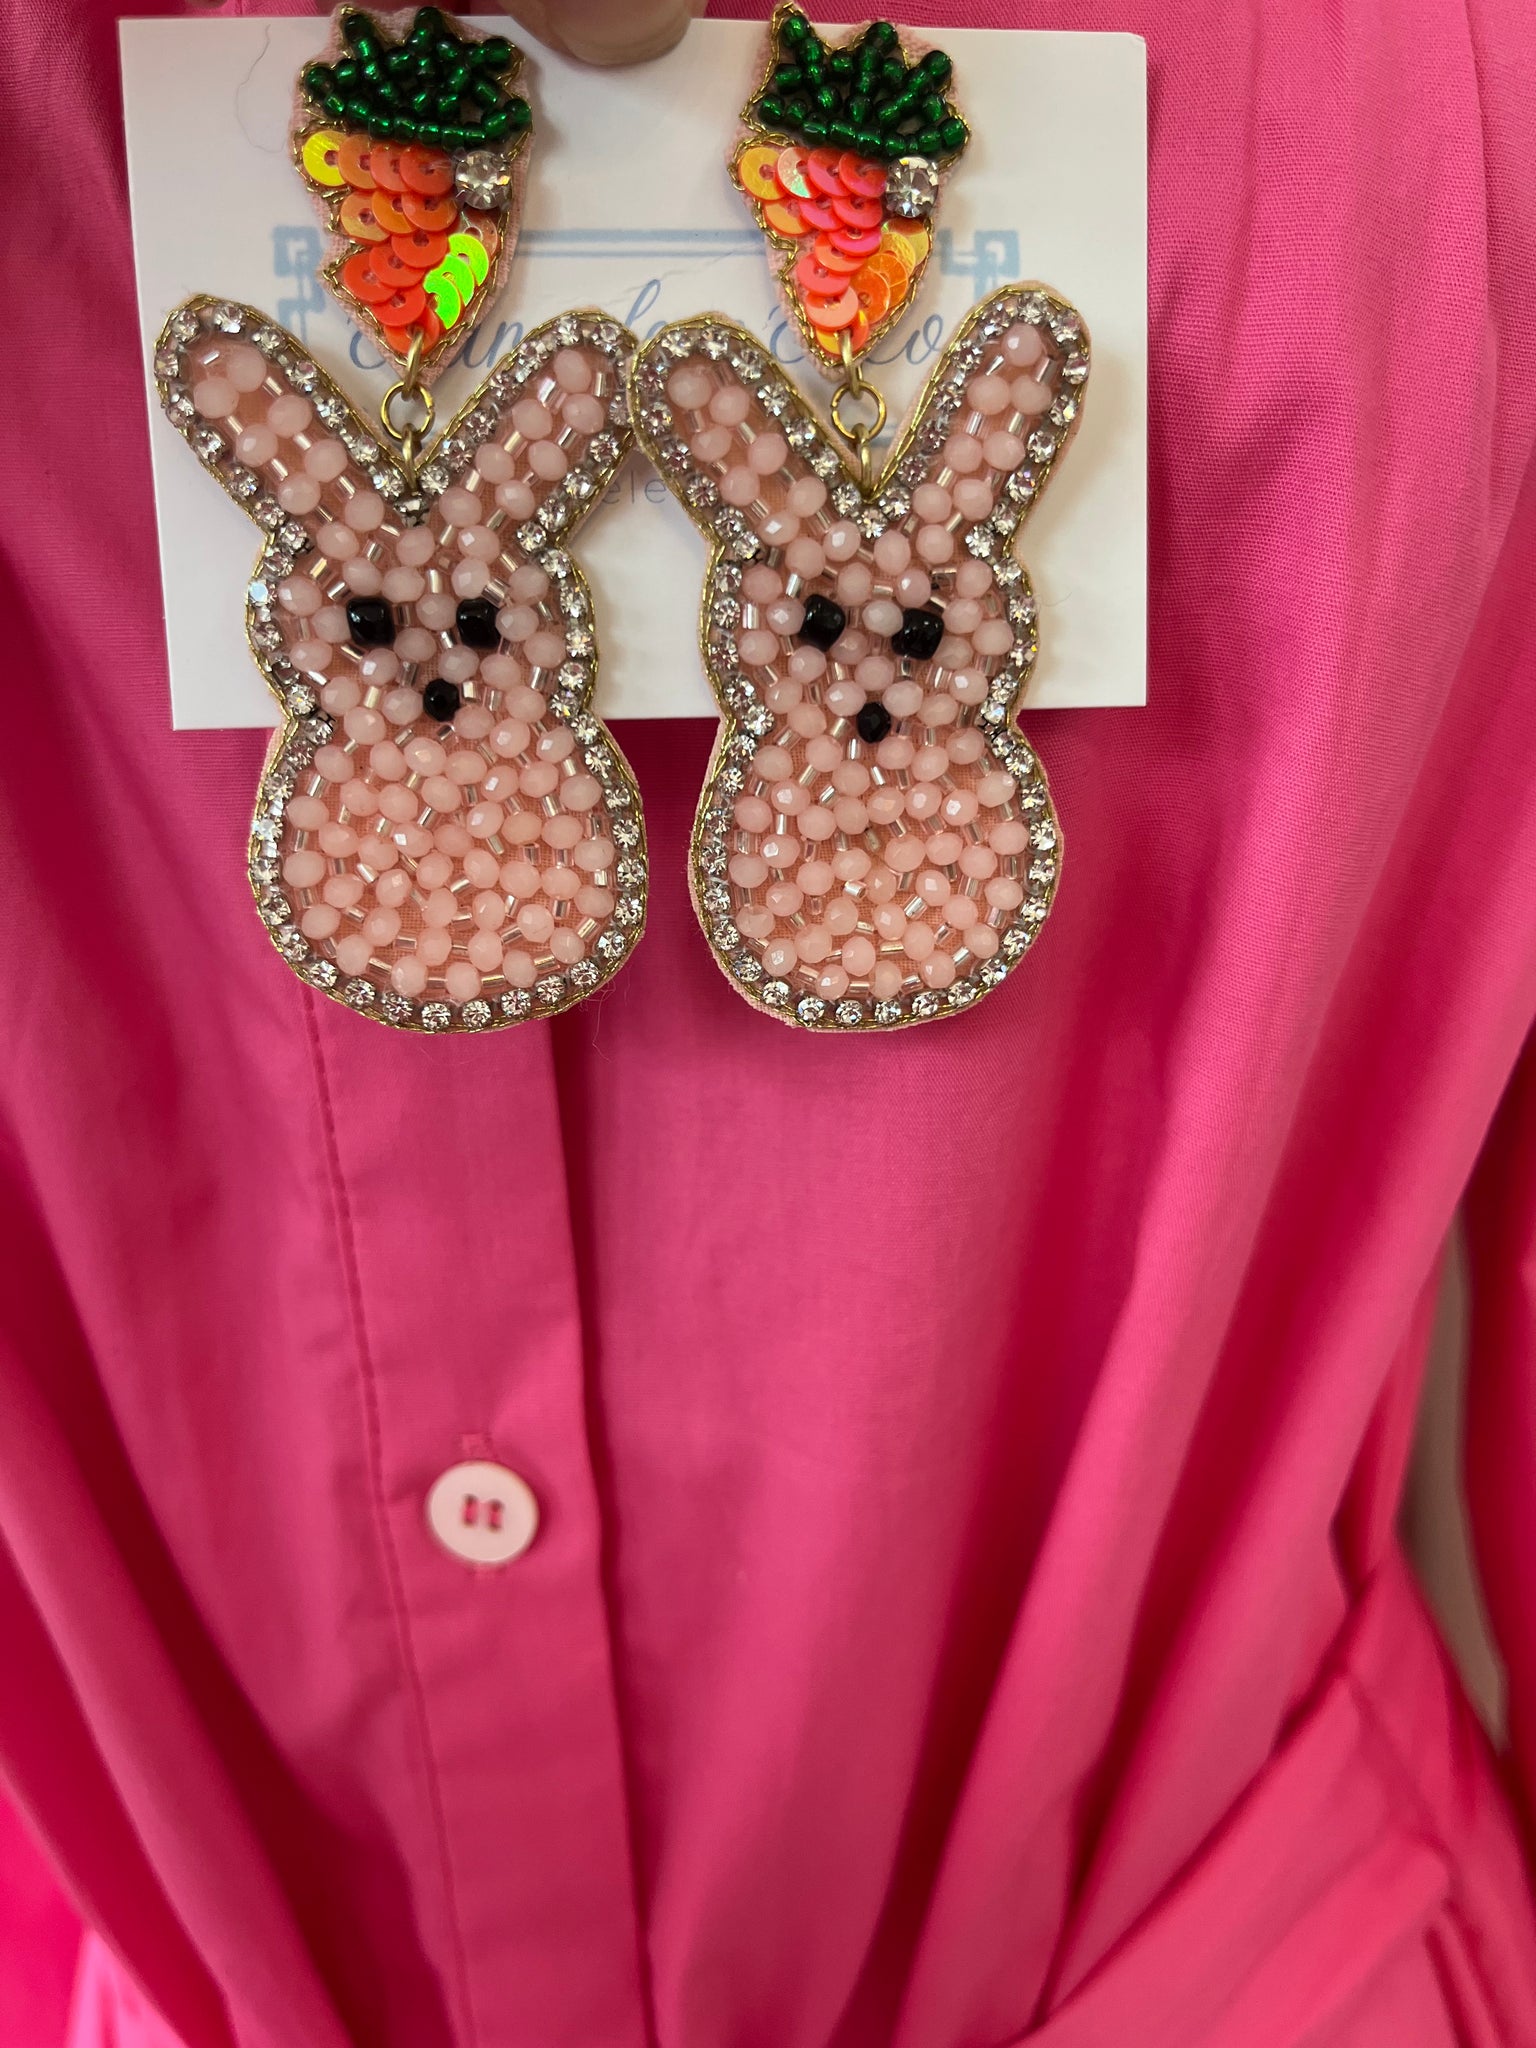 Easter Bunny & Carrot Earring